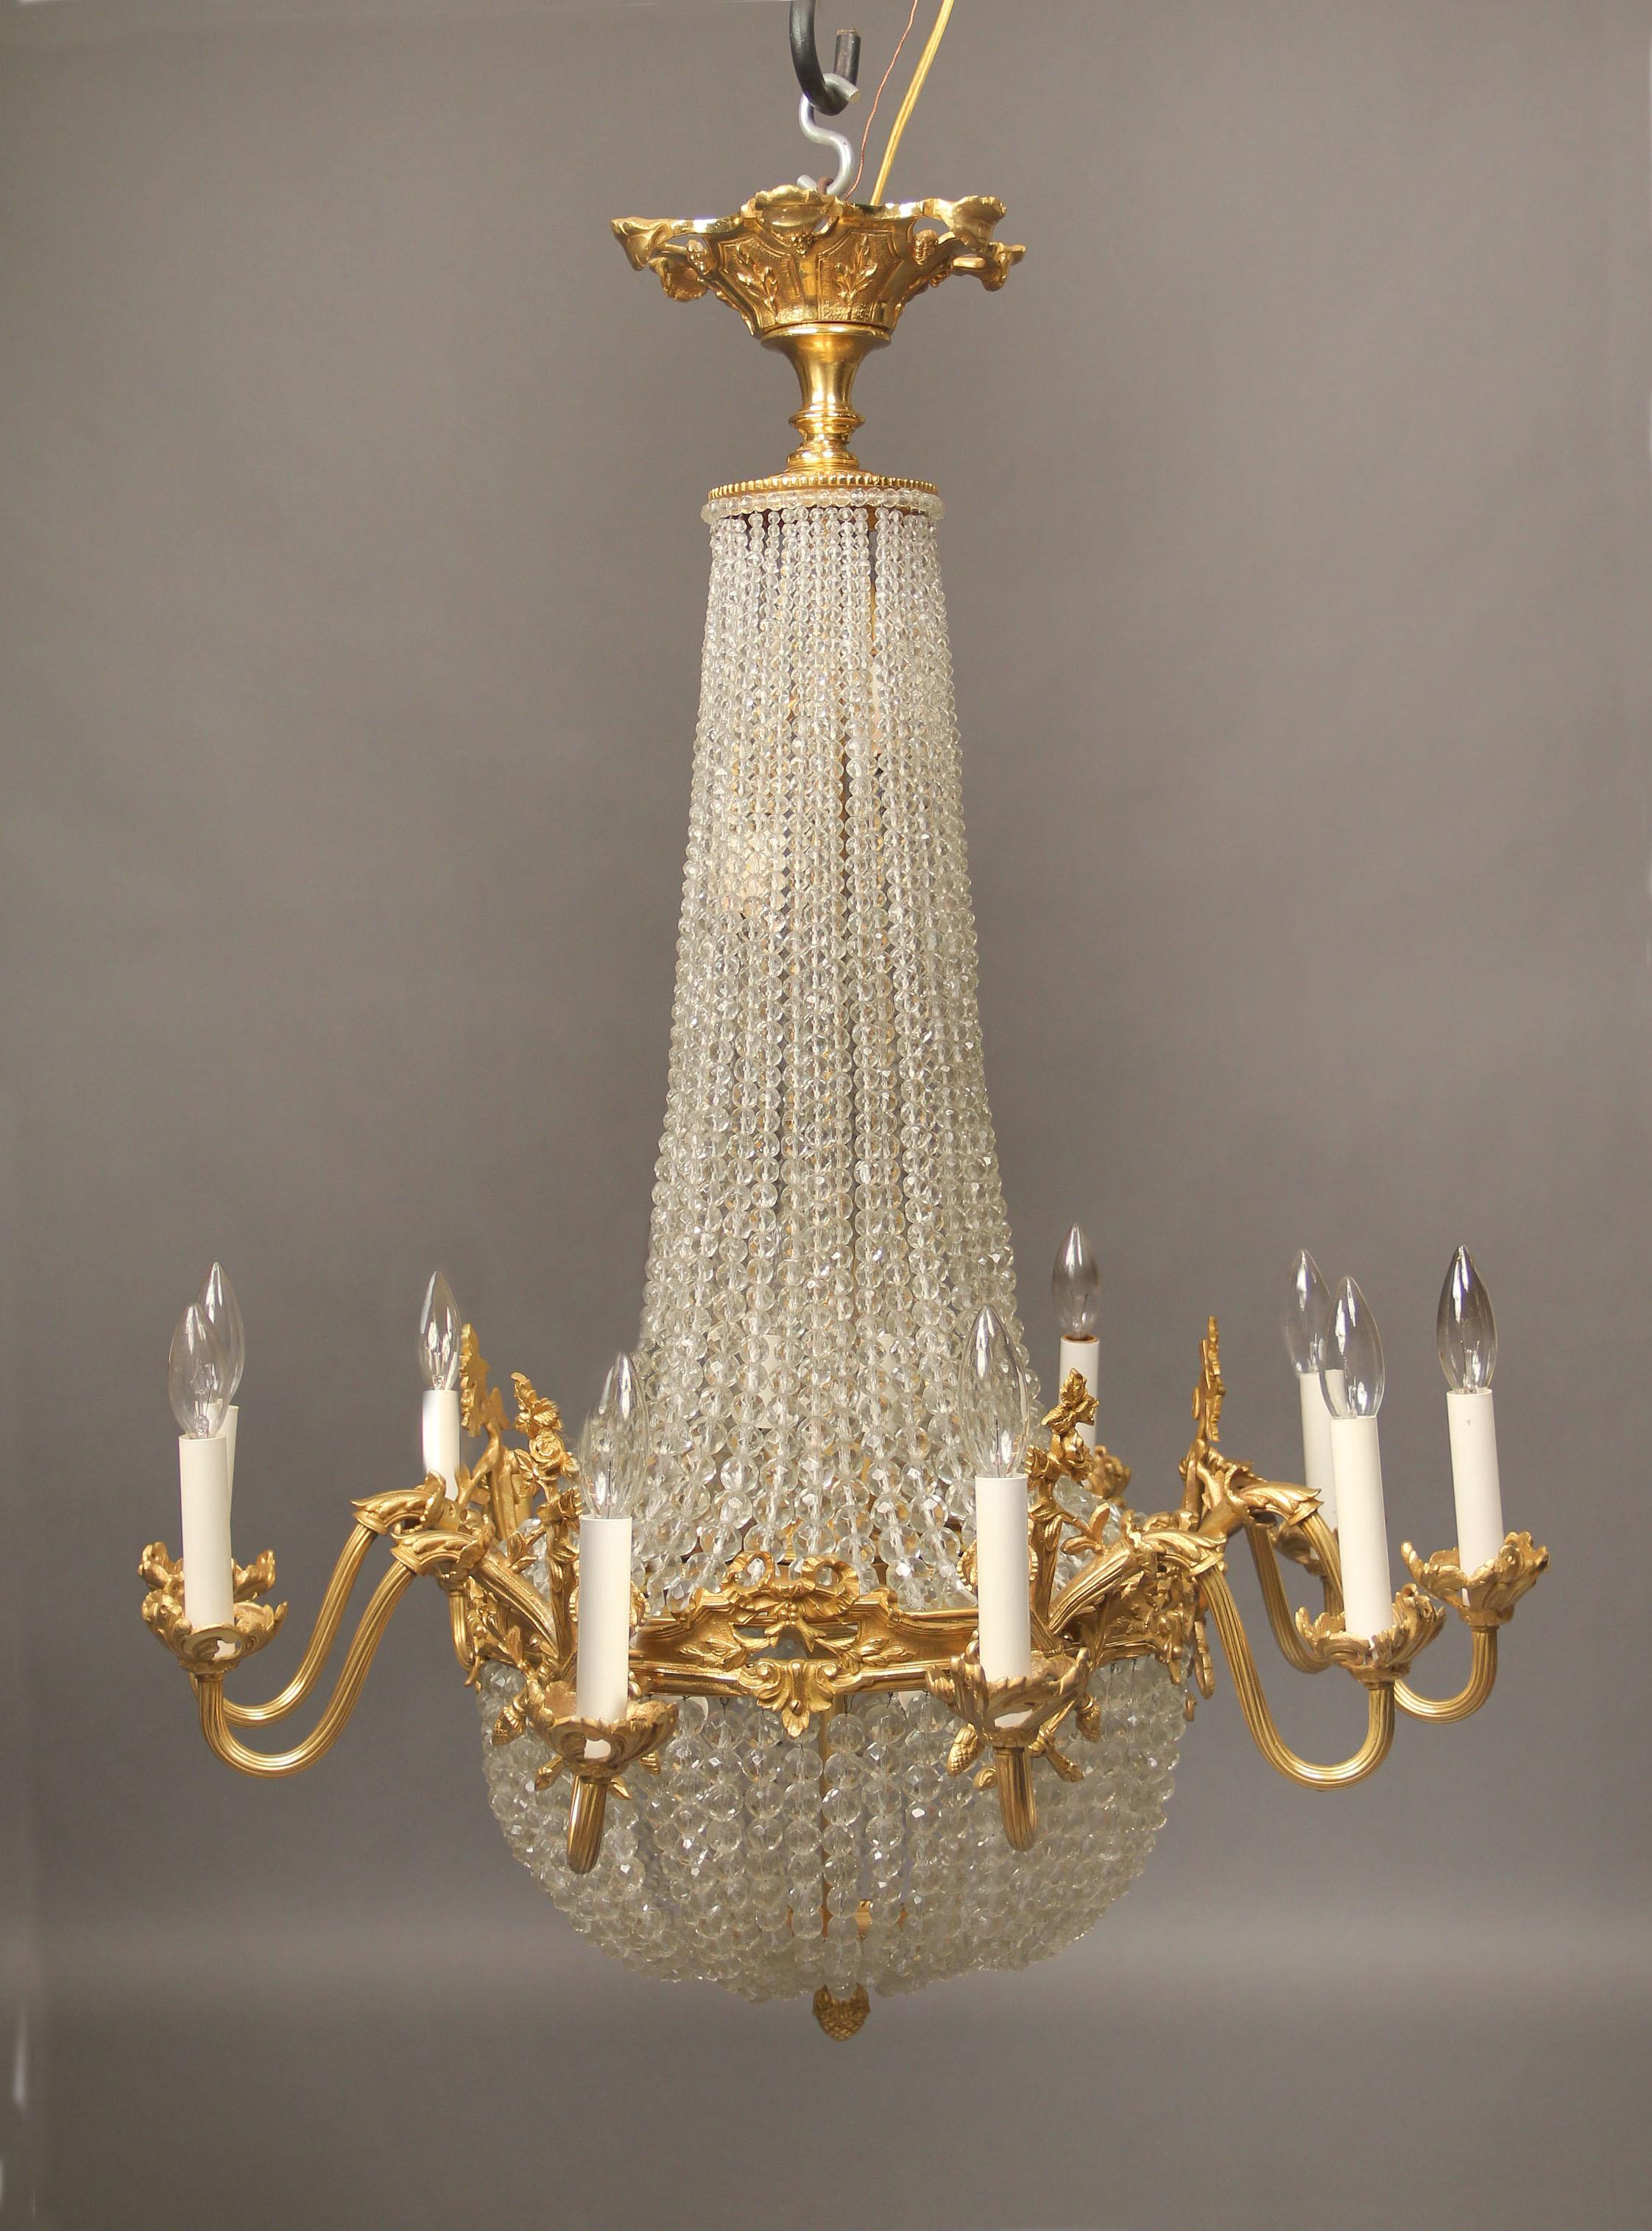 Lustre à vingt lumières en bronze doré et panier de cristal perlé de la fin du 19e siècle

Bras en bronze très finement moulé supportant dix lumières périmétriques, dix lumières intérieures en gradins.